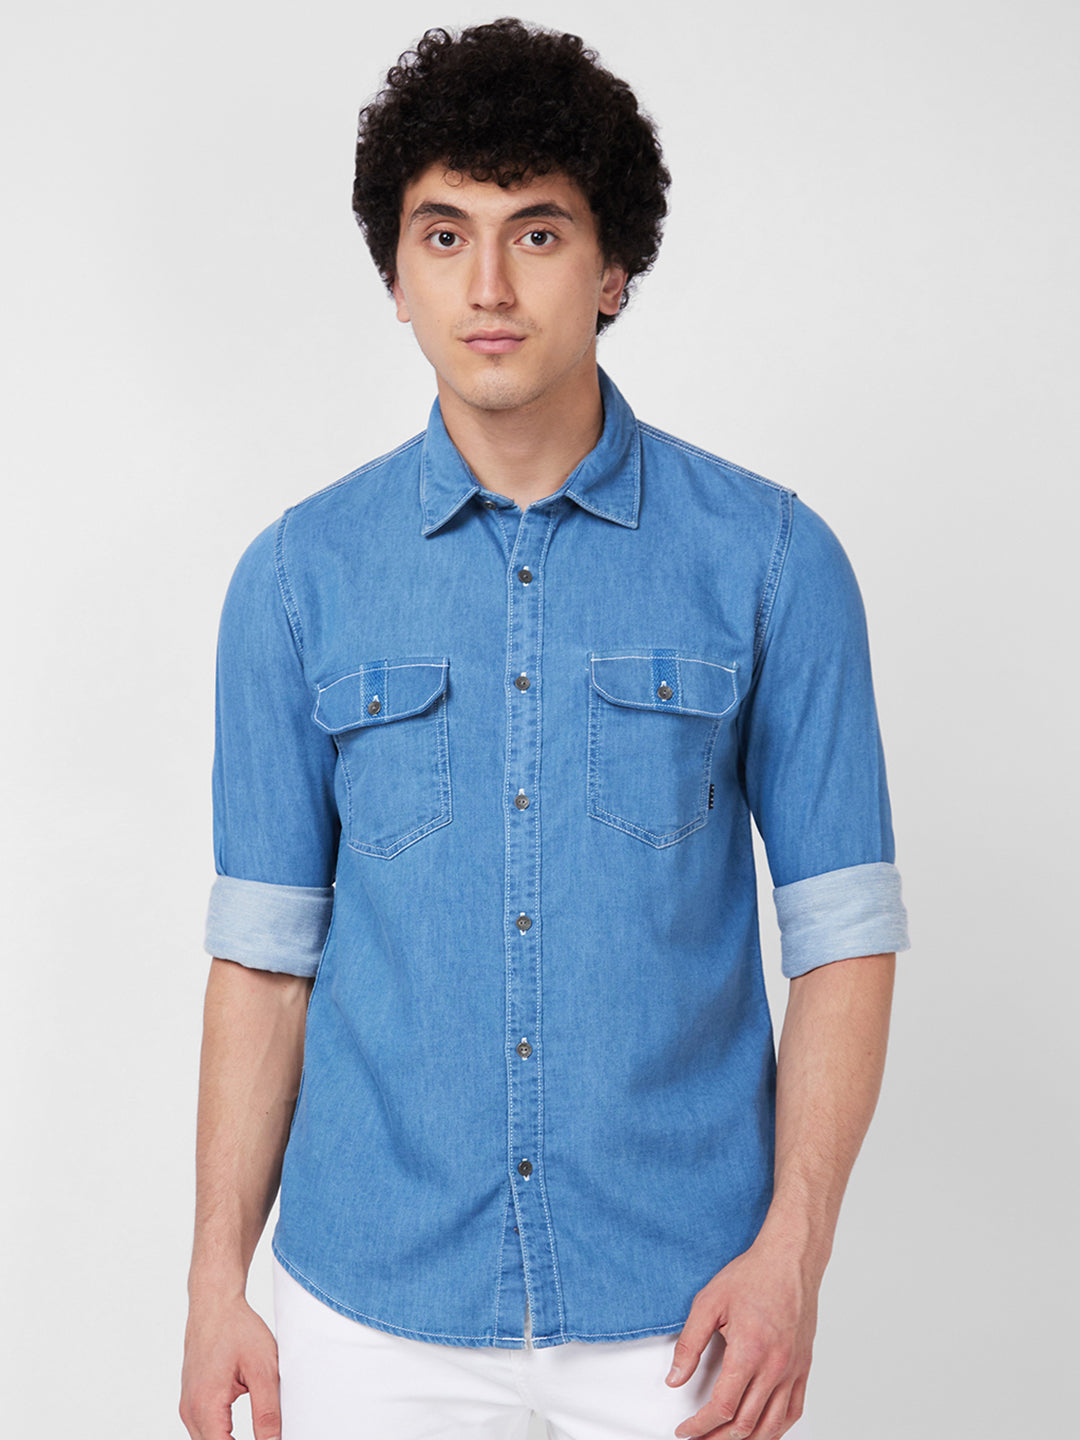 Spykar Blue Indigo Shirt For Men